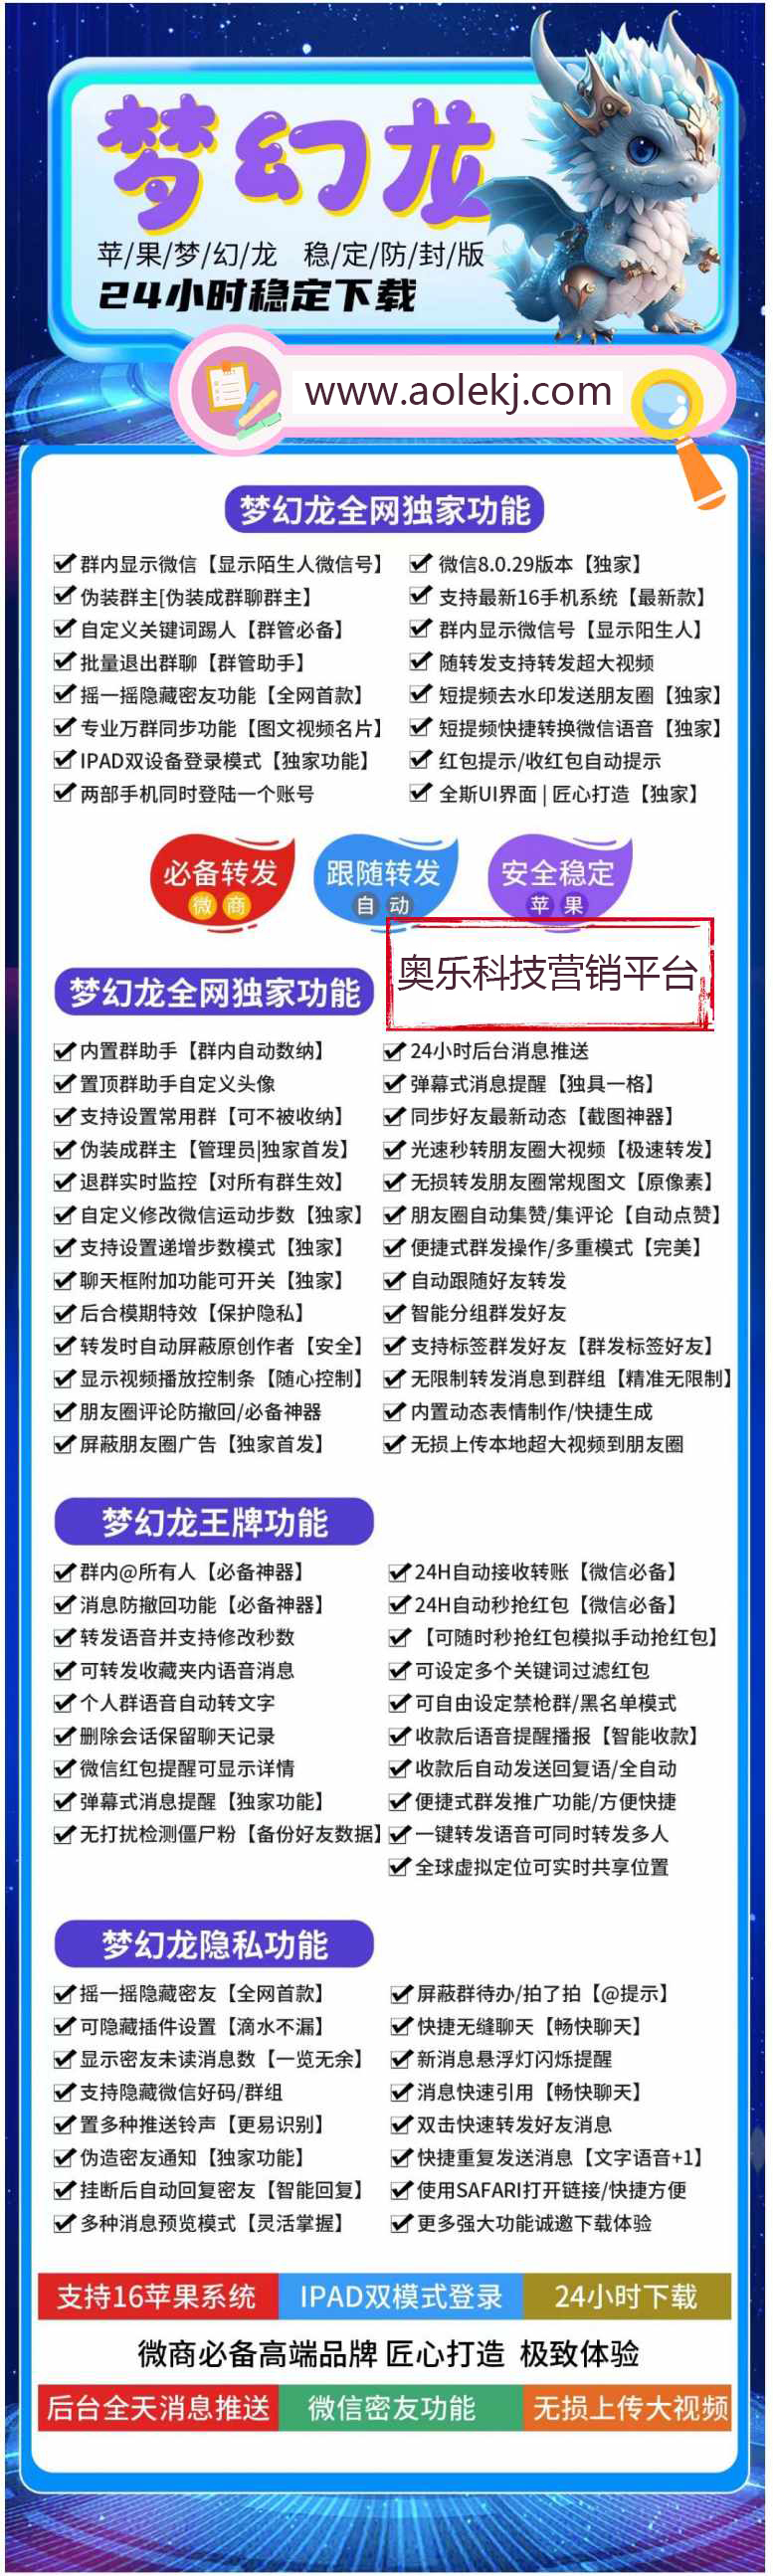 苹果梦幻龙多开官网下载更新官网激活码激活授权码卡